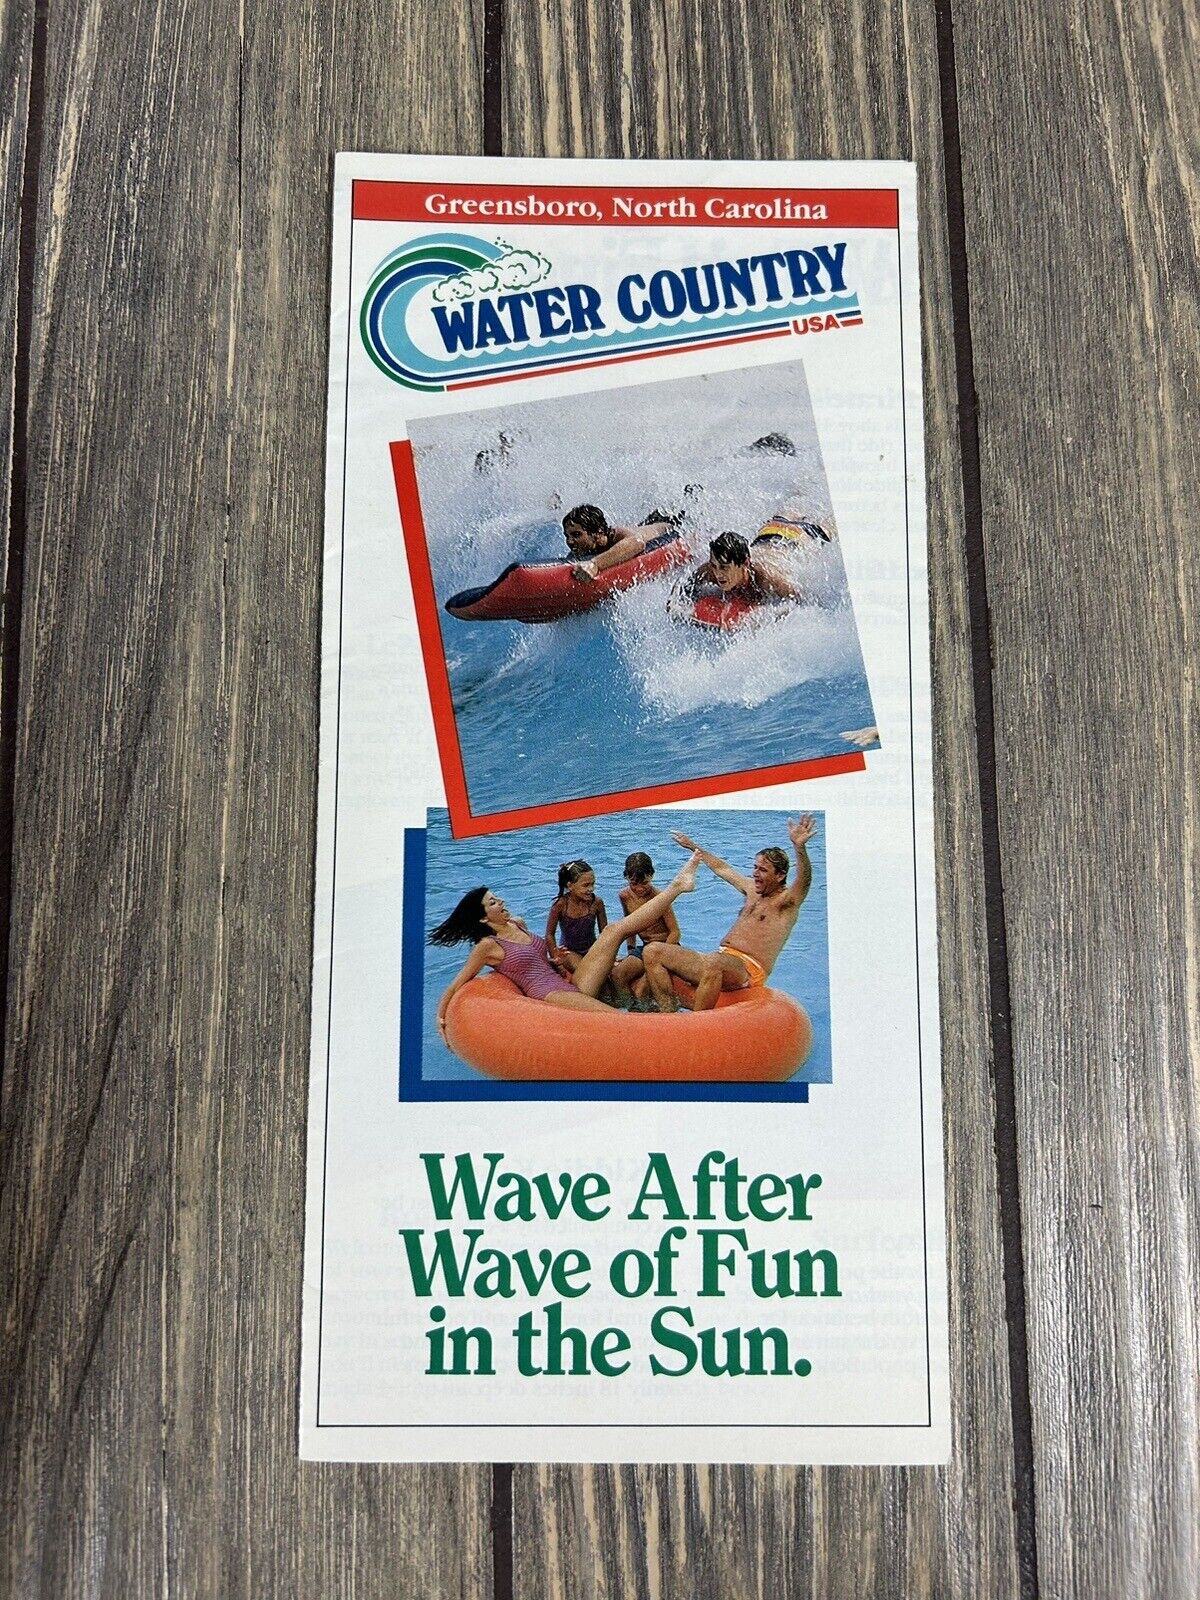 VTG Greensboro North Carolina Water Country USA Brochure Pamphlet Souvenir